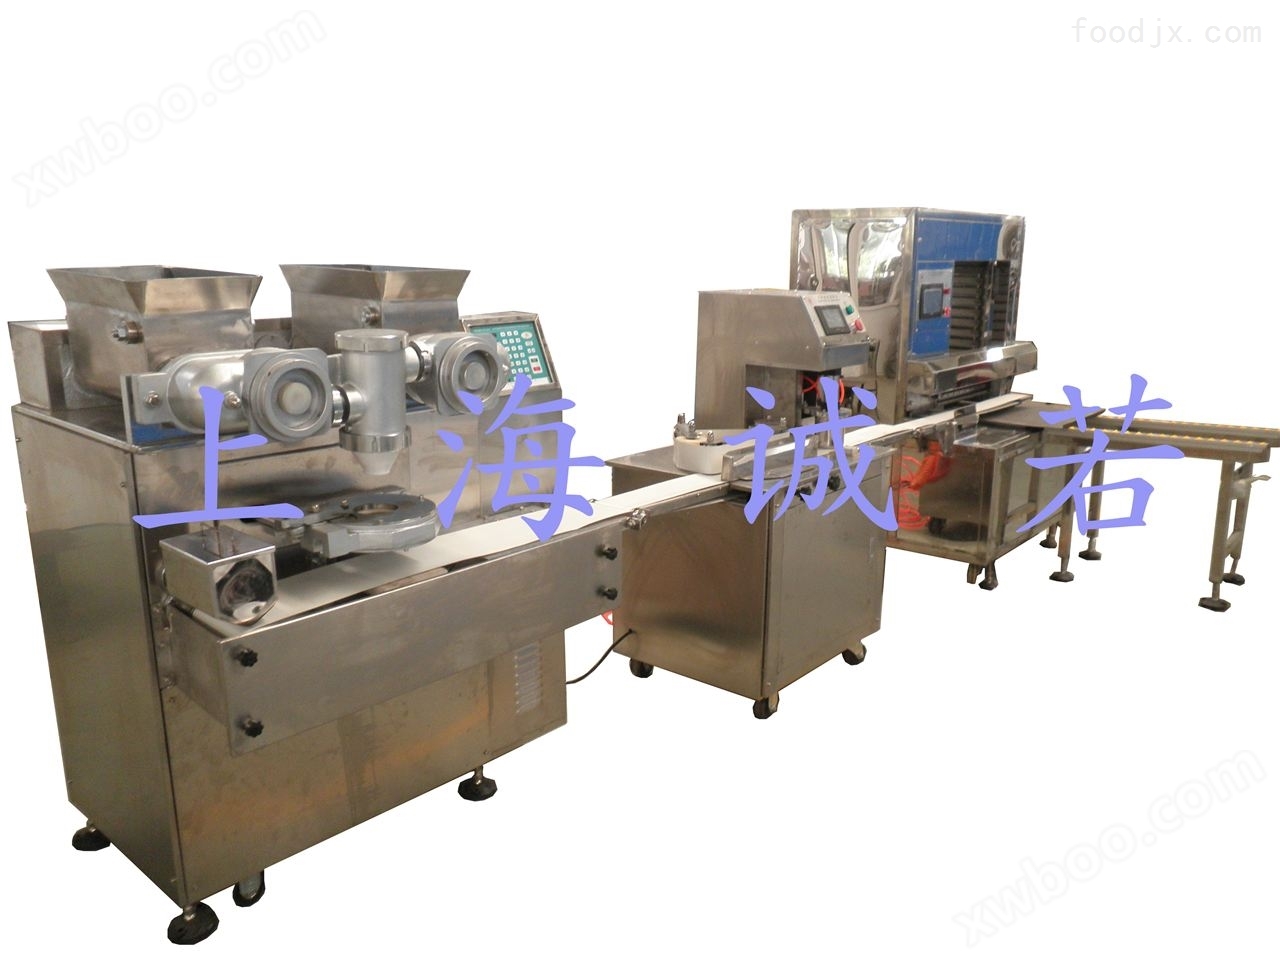 月饼机生产厂家 上海诚若机械有限公司 月饼成型机